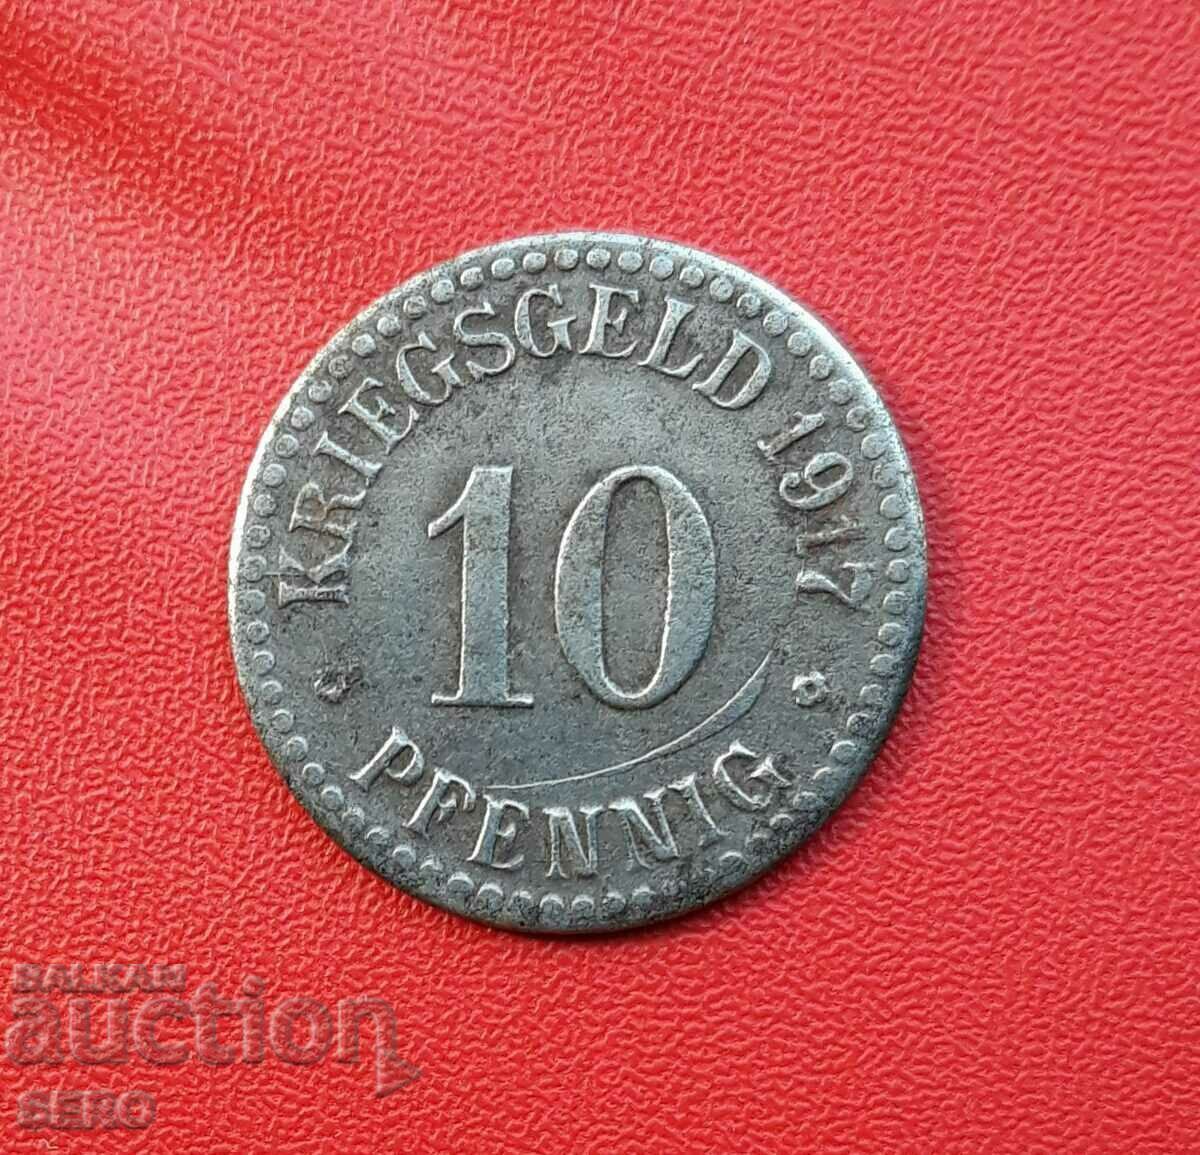 Γερμανία-Έσση-Κάσσελ-10 pfennig 1917-ραγισμένο ζάρι